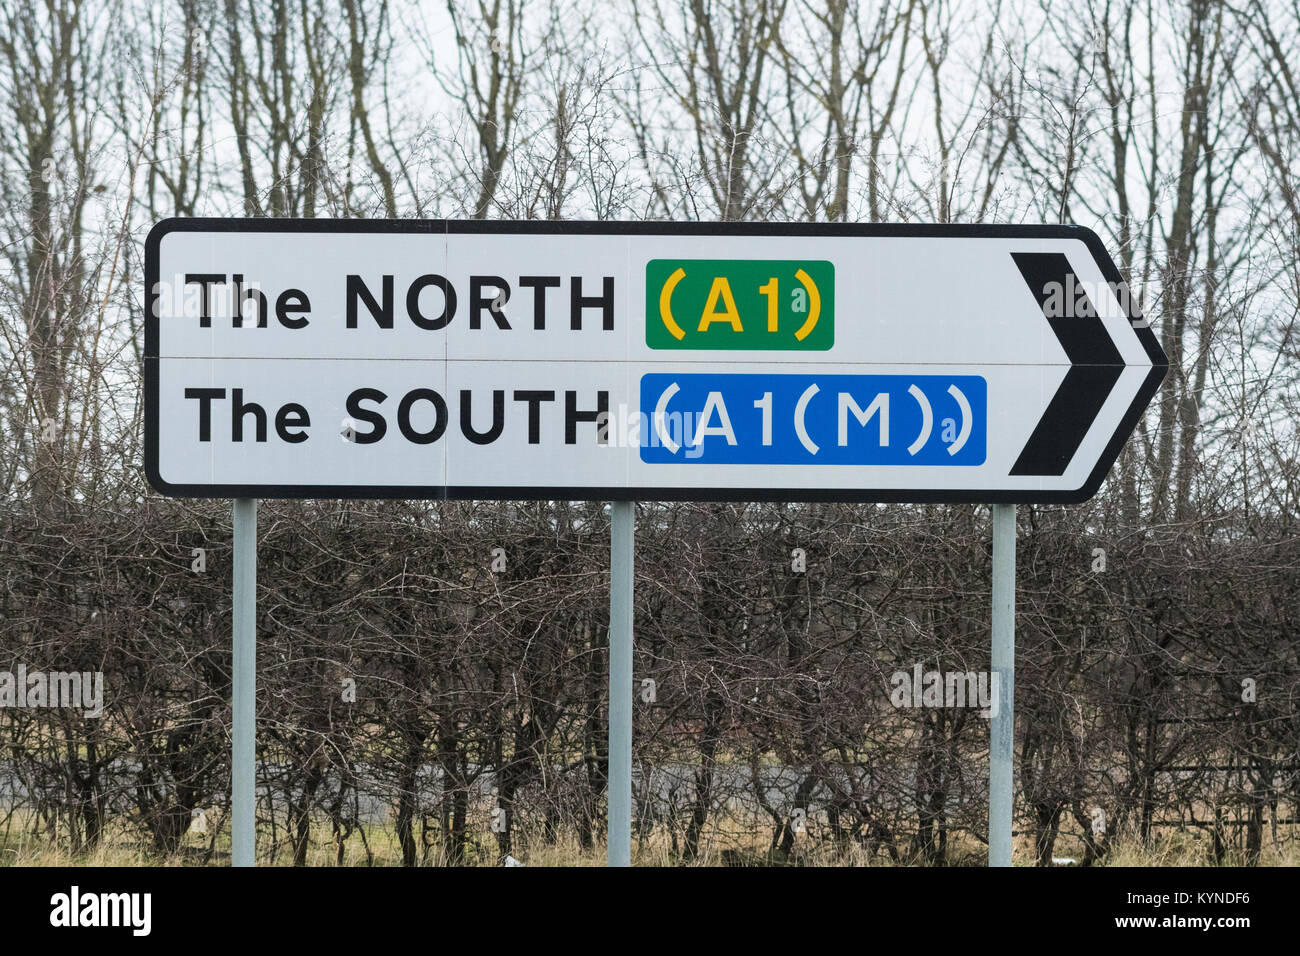 Der Norden der Süden A1 A1 (M) Straßenschild - Norden und Süden zeigt in die gleiche Richtung - Nivellierung bis Konzept Stockfoto